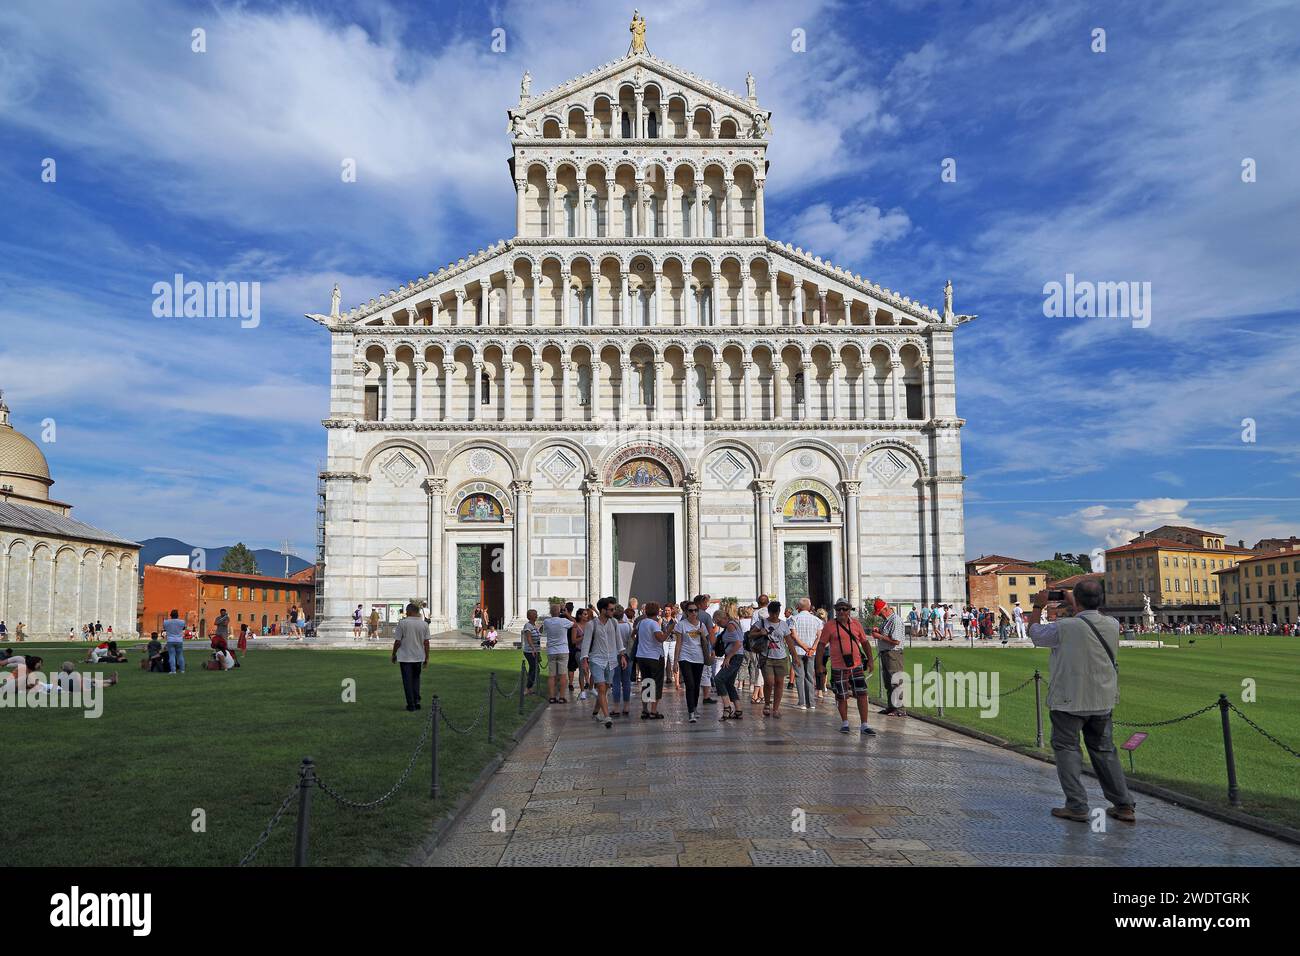 PISA, ITALIA - 16 DE SEPTIEMBRE de 2018: Este es un grupo de turistas frente a la fachada de la Catedral en honor a la Asunción de la Santísima Virgen Foto de stock